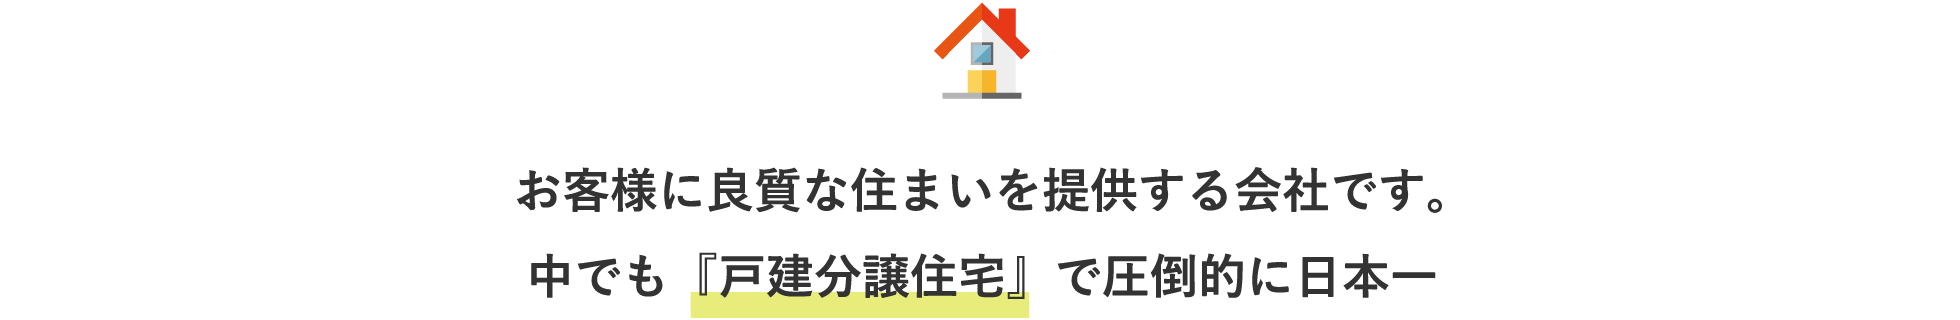 お客様に良質な住まいを提供する会社です。中でも『戸建分譲住宅』で圧倒的に日本一